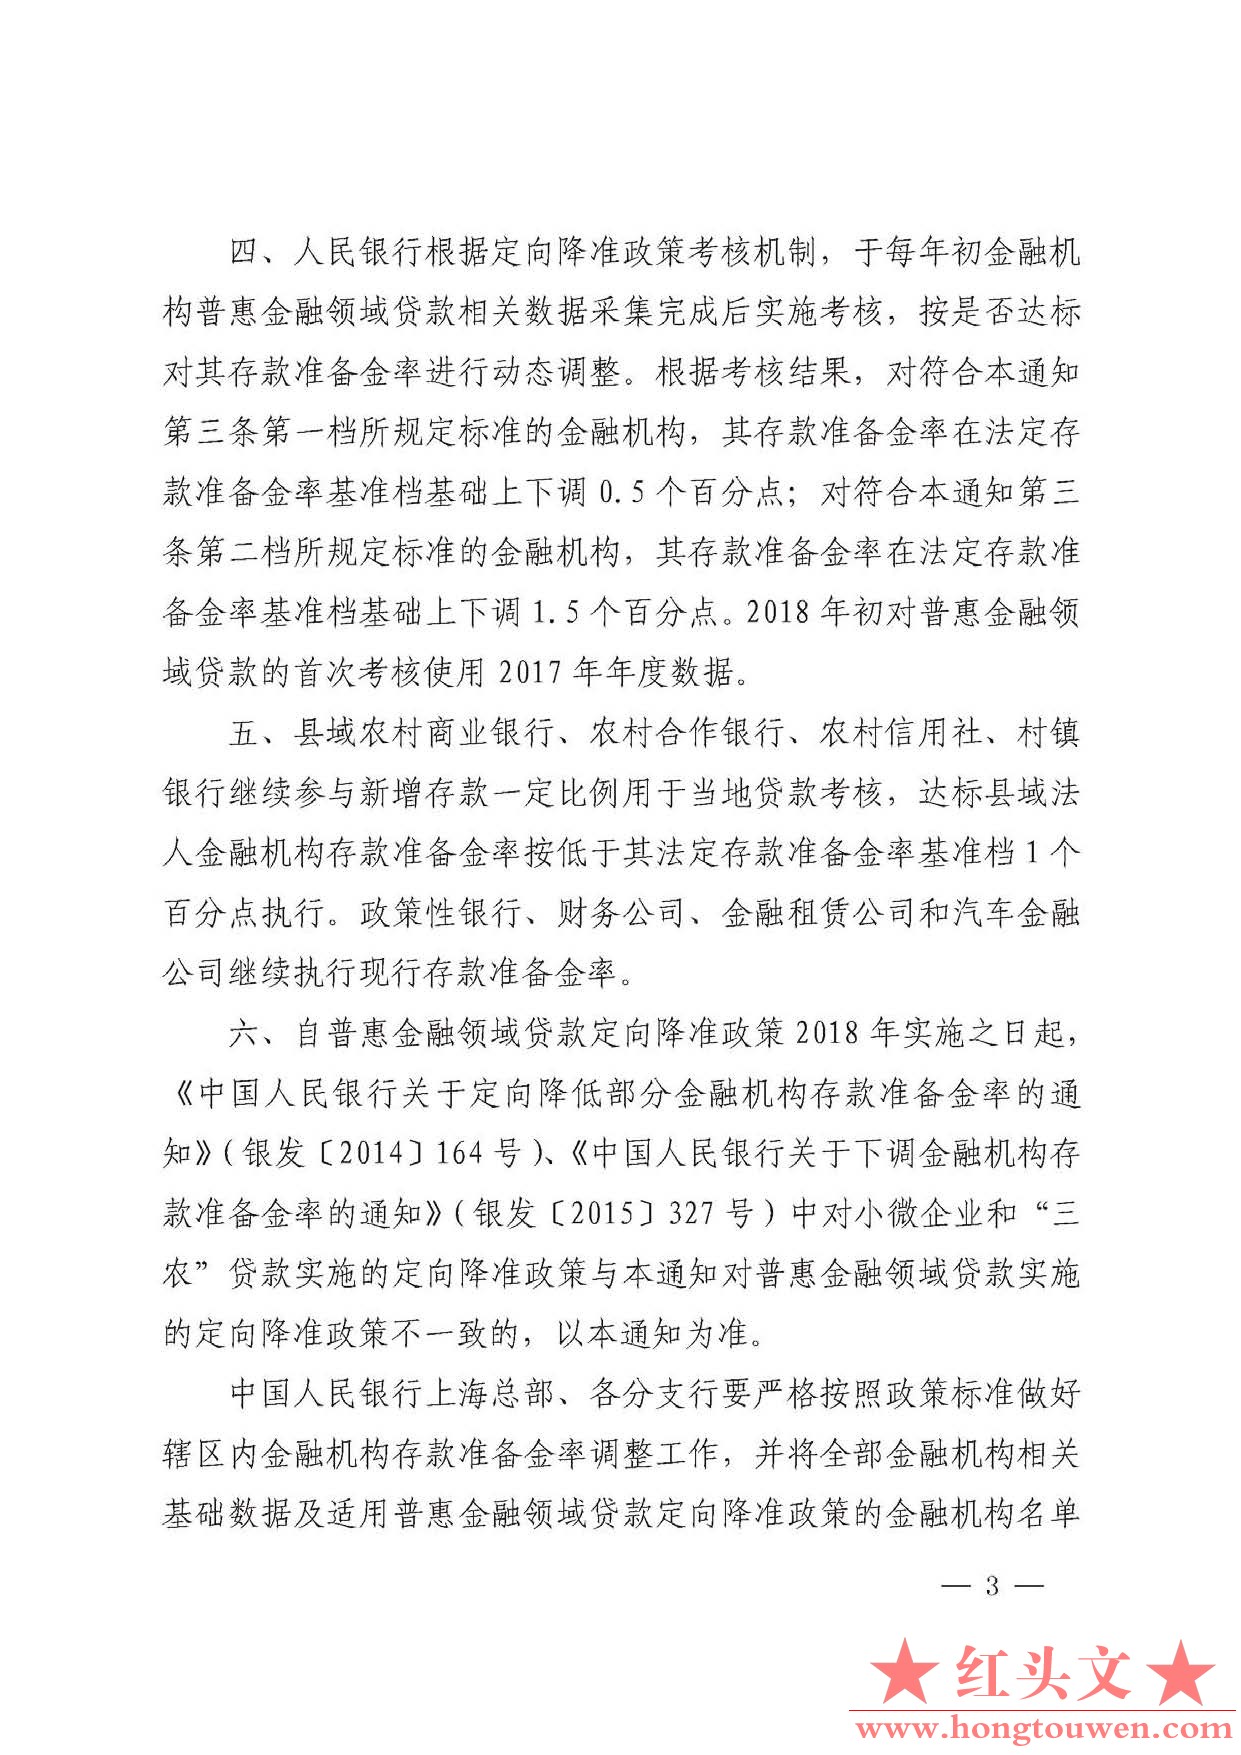 银发[2017]222号-中国人民银行关于对普惠金融实施定向降准的通知_页面_3.jpg.jpg